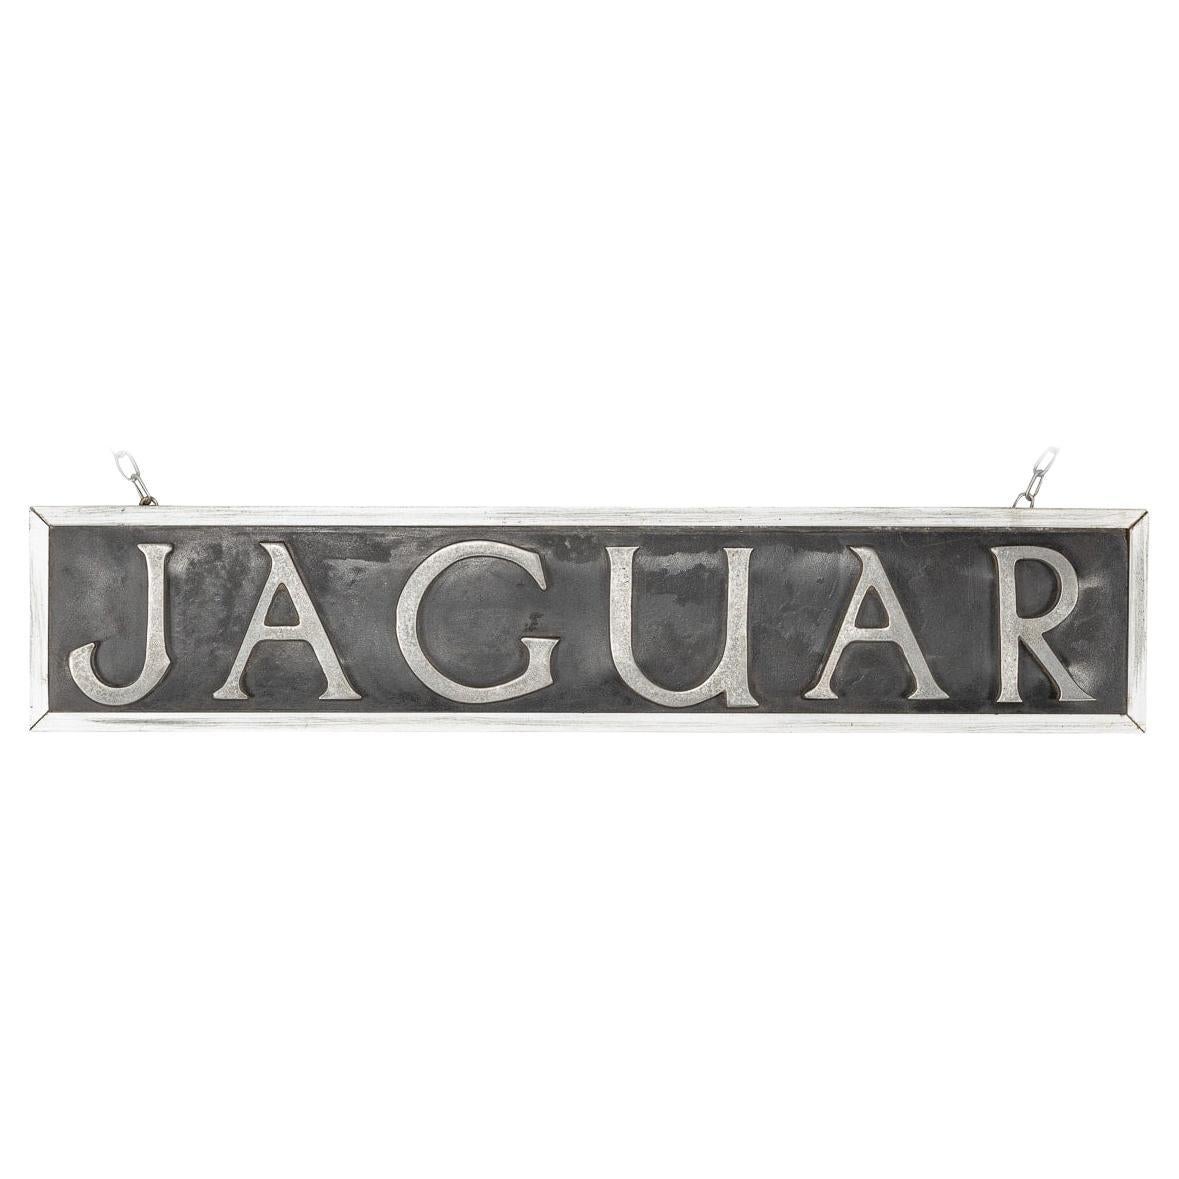 20th Century British Jaguar Dealership Sign, c.1970